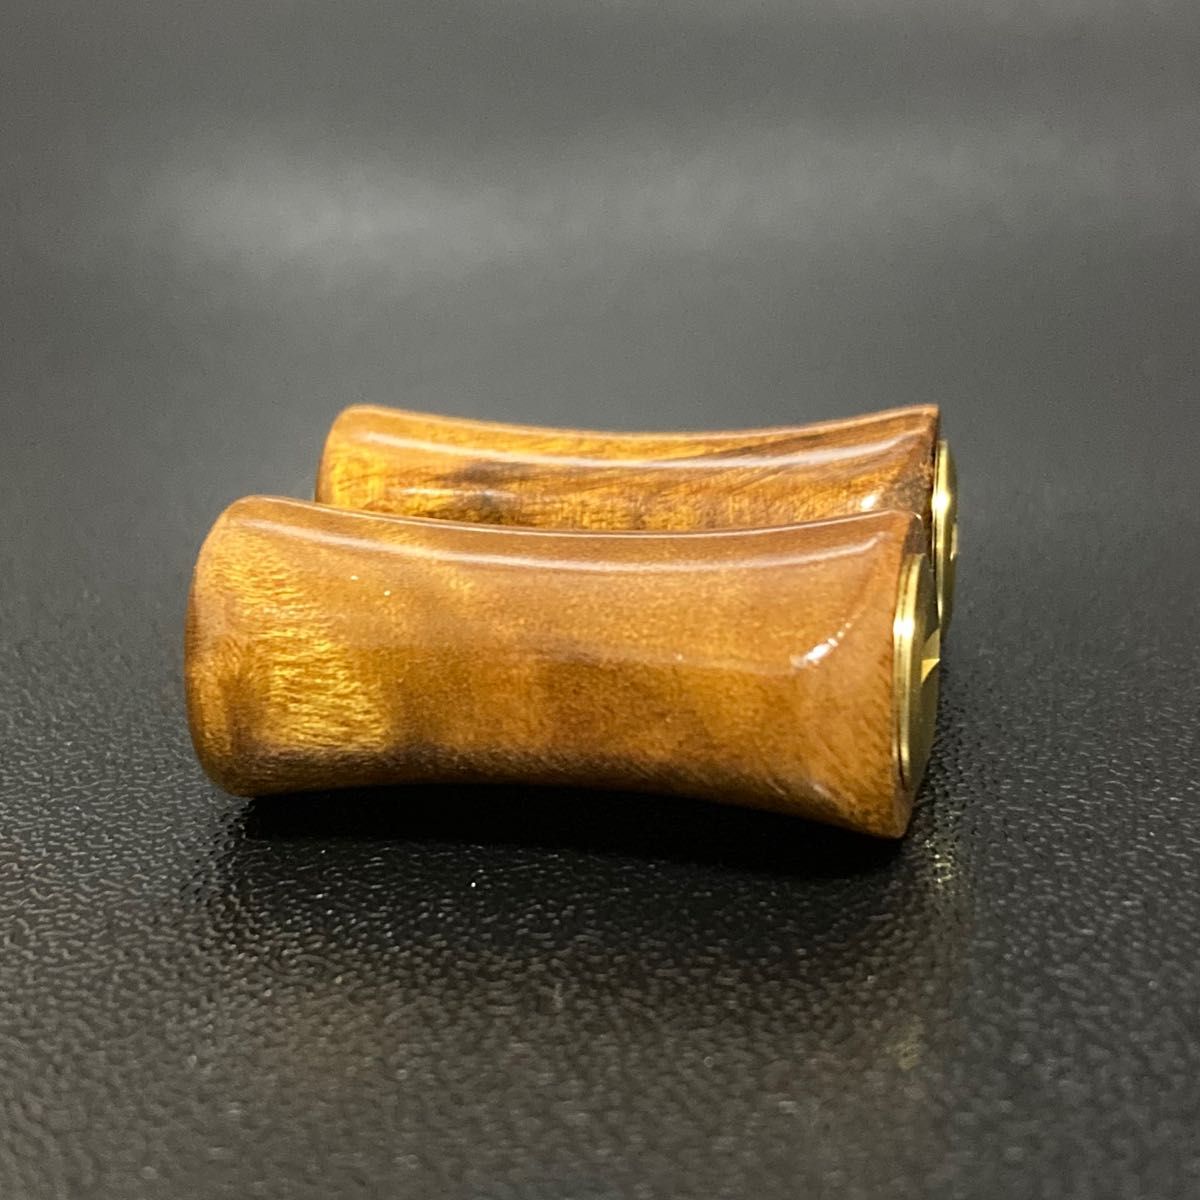 【新品】ウッドノブ 木製ノブ 木目/GOLD 2個セット ダイワ、シマノ対応